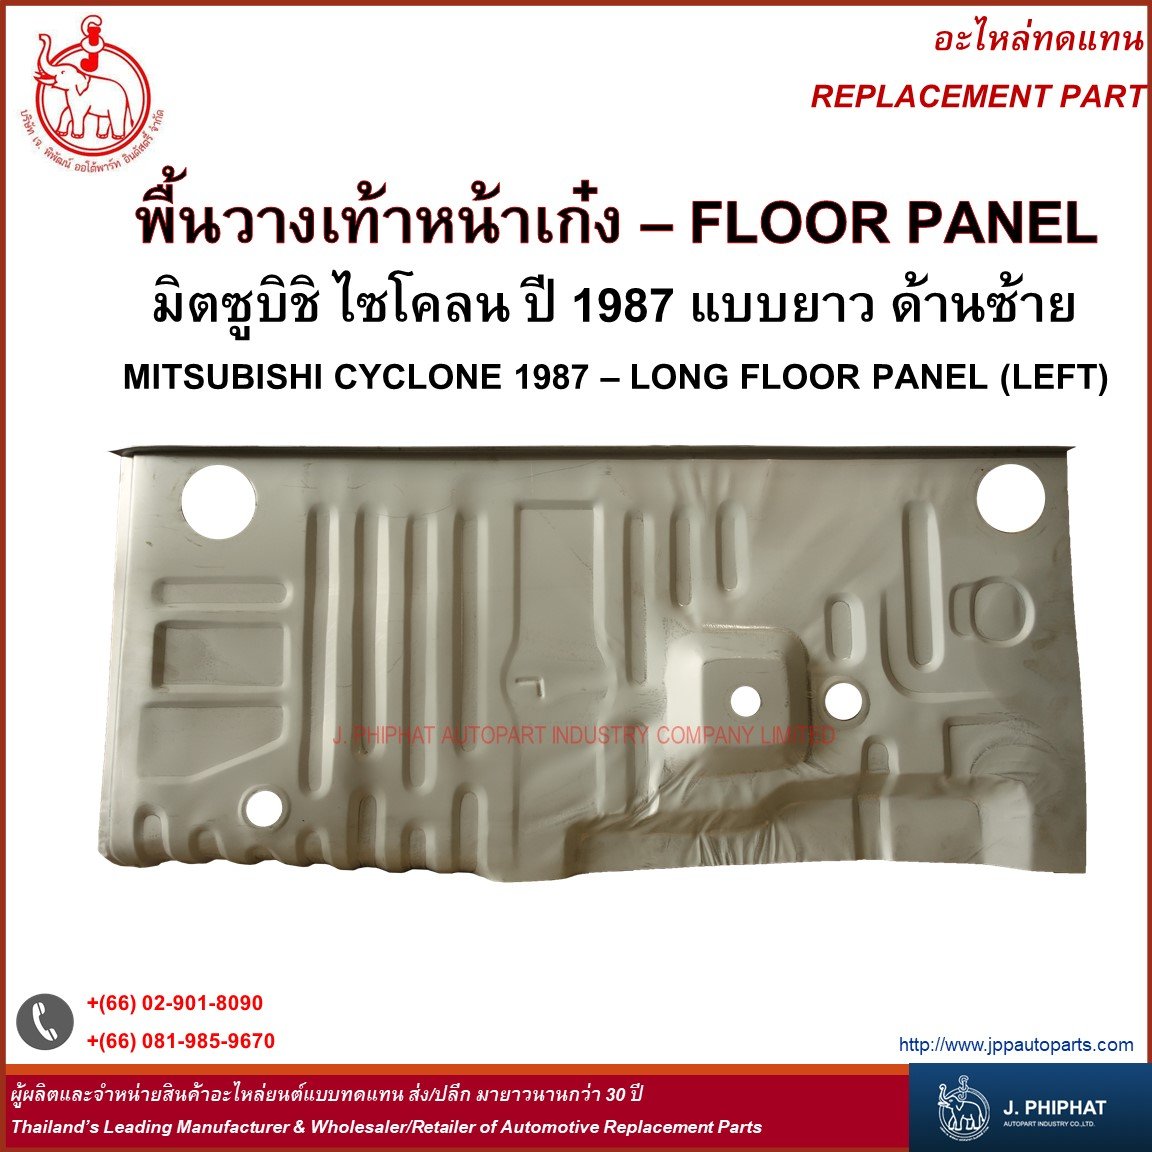 Floor Panel - Mitsubishi Cyclone 1987 Long floor panel